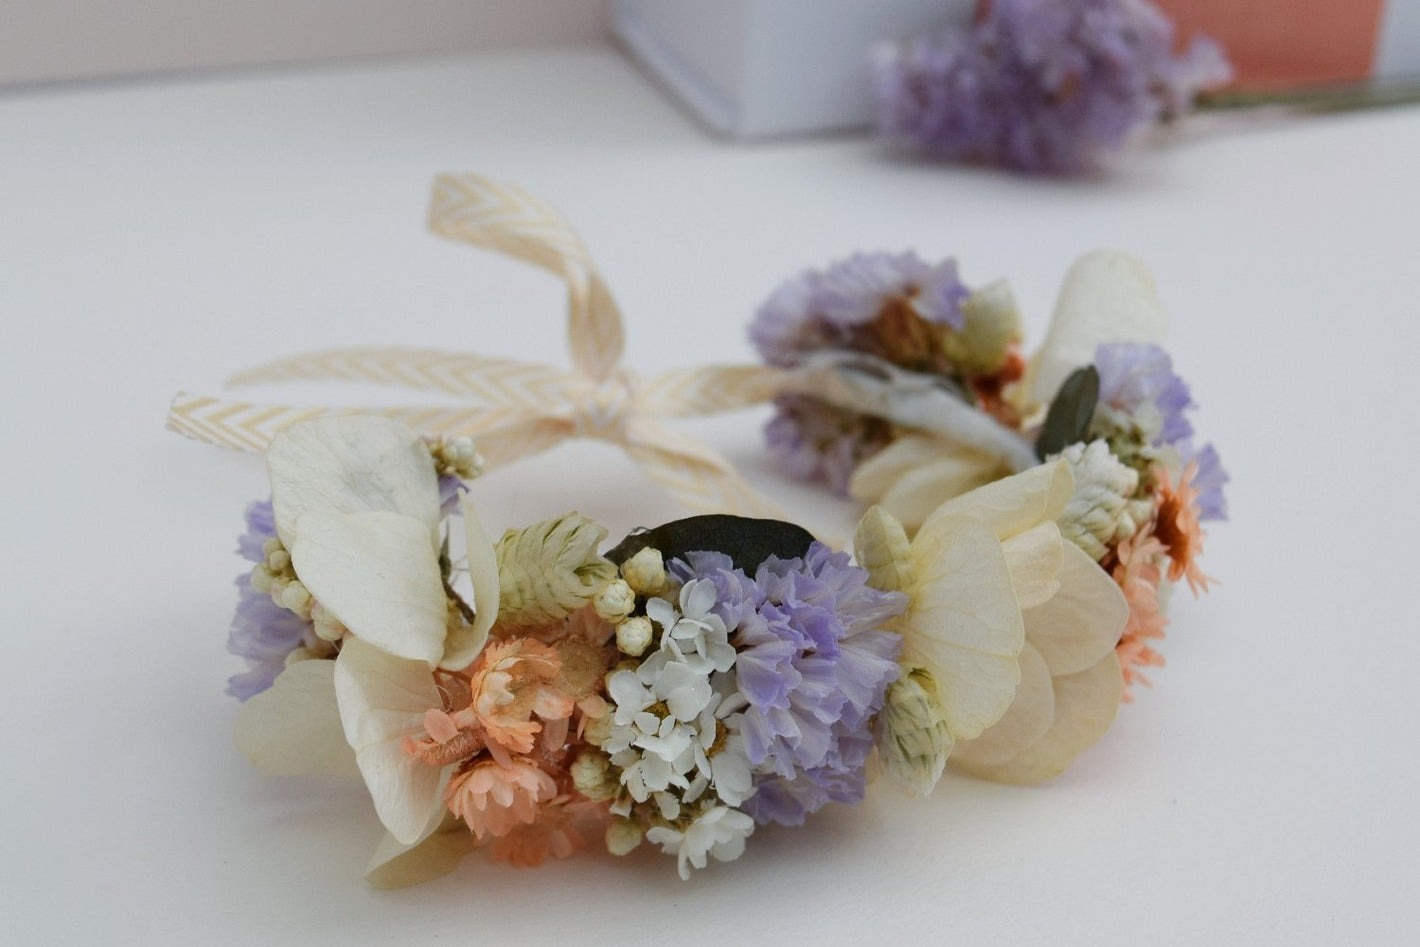 Handgemaakte armband van droogbloemen in pasteltinten waaronder crèmekleurige hortensia, mauve statice, groene breeza en oranje glixia bloemetjes. Dun lint bevestigd om de armband vast te knopen rond de pols